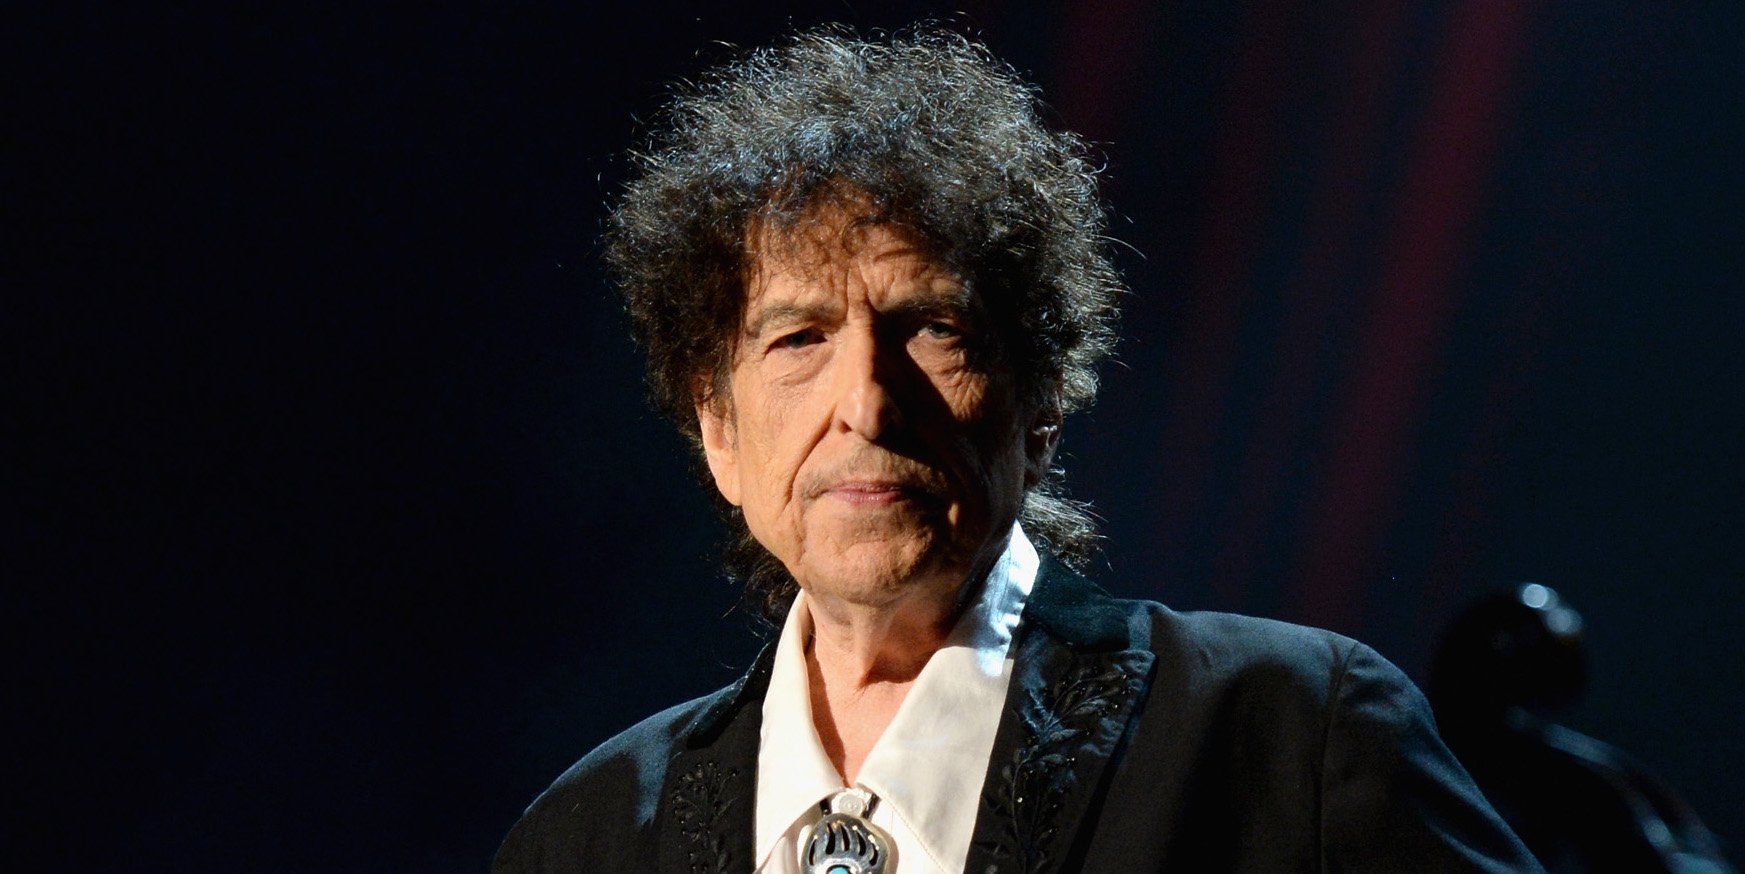  Bob Dylan, dat în judecată pentru că ar fi drogat şi agresat sexual o minoră în 1965